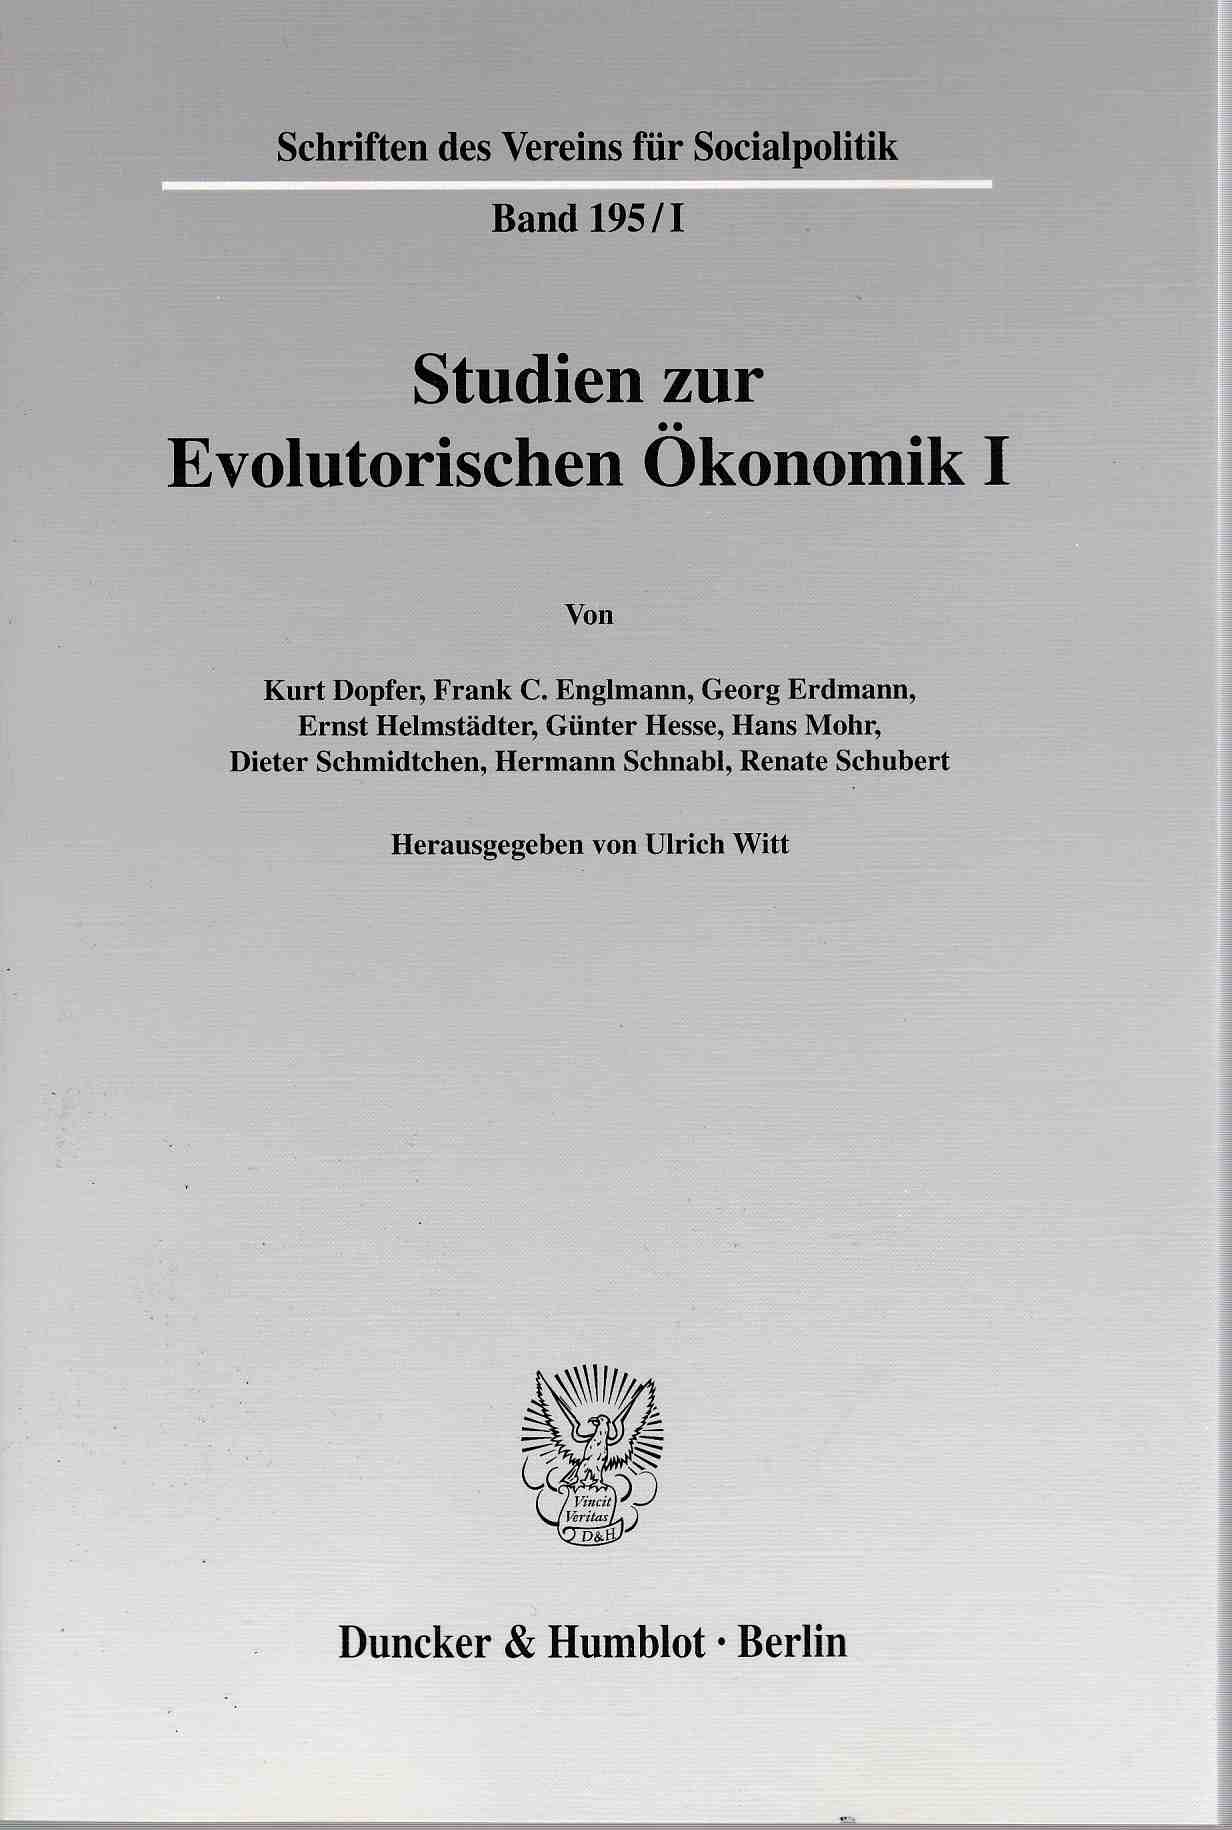 Studien zur Evolutorischen Ökonomik I. Schriften des Vereins für Socialpolitik (SVS), Band 195/I. - Witt, Ulrich (Hg.)